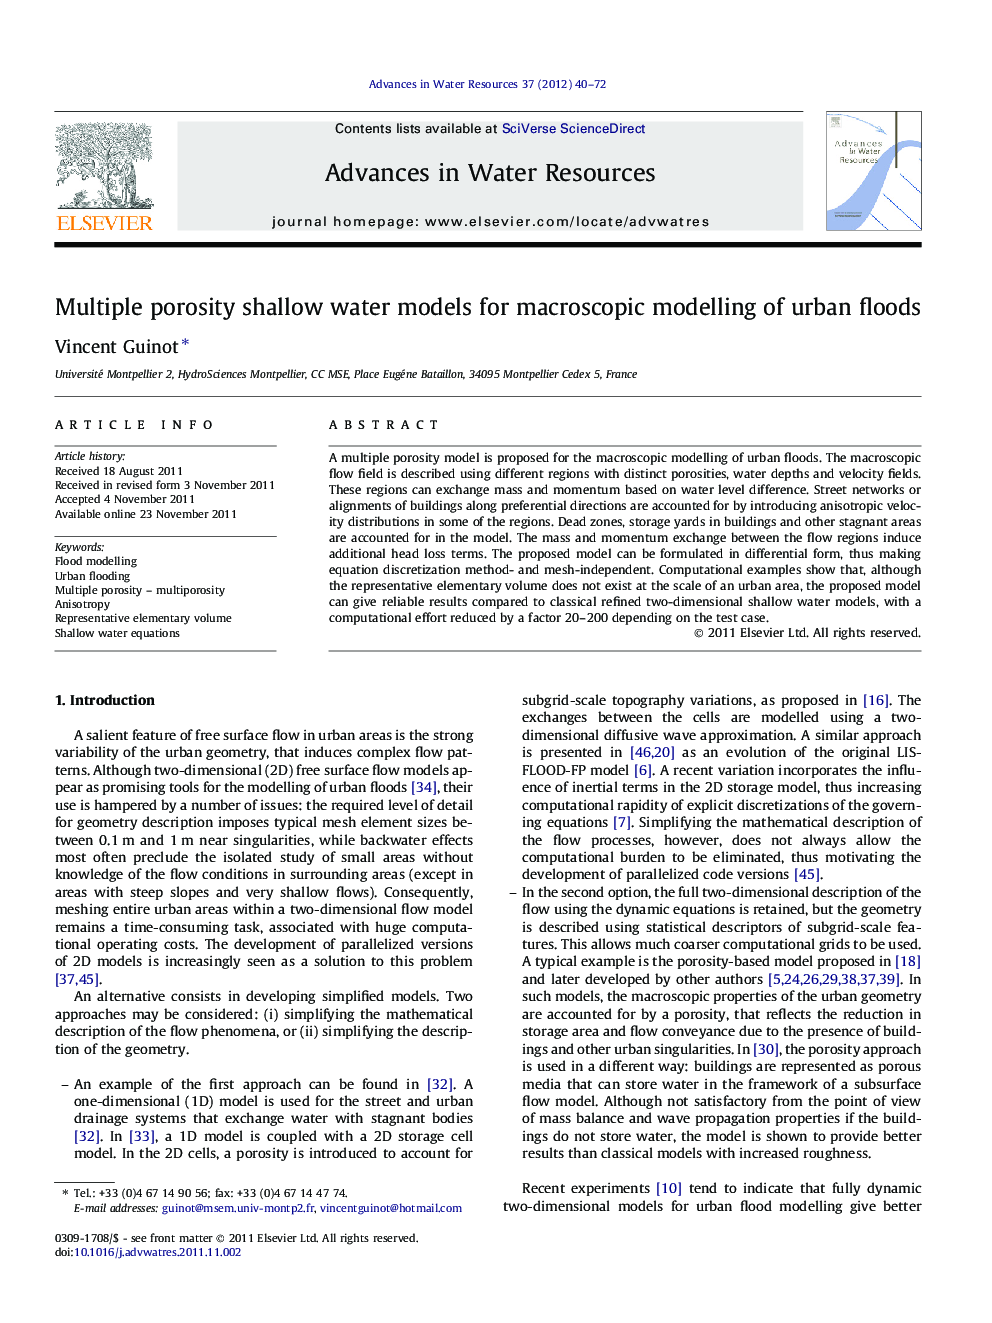 Multiple porosity shallow water models for macroscopic modelling of urban floods